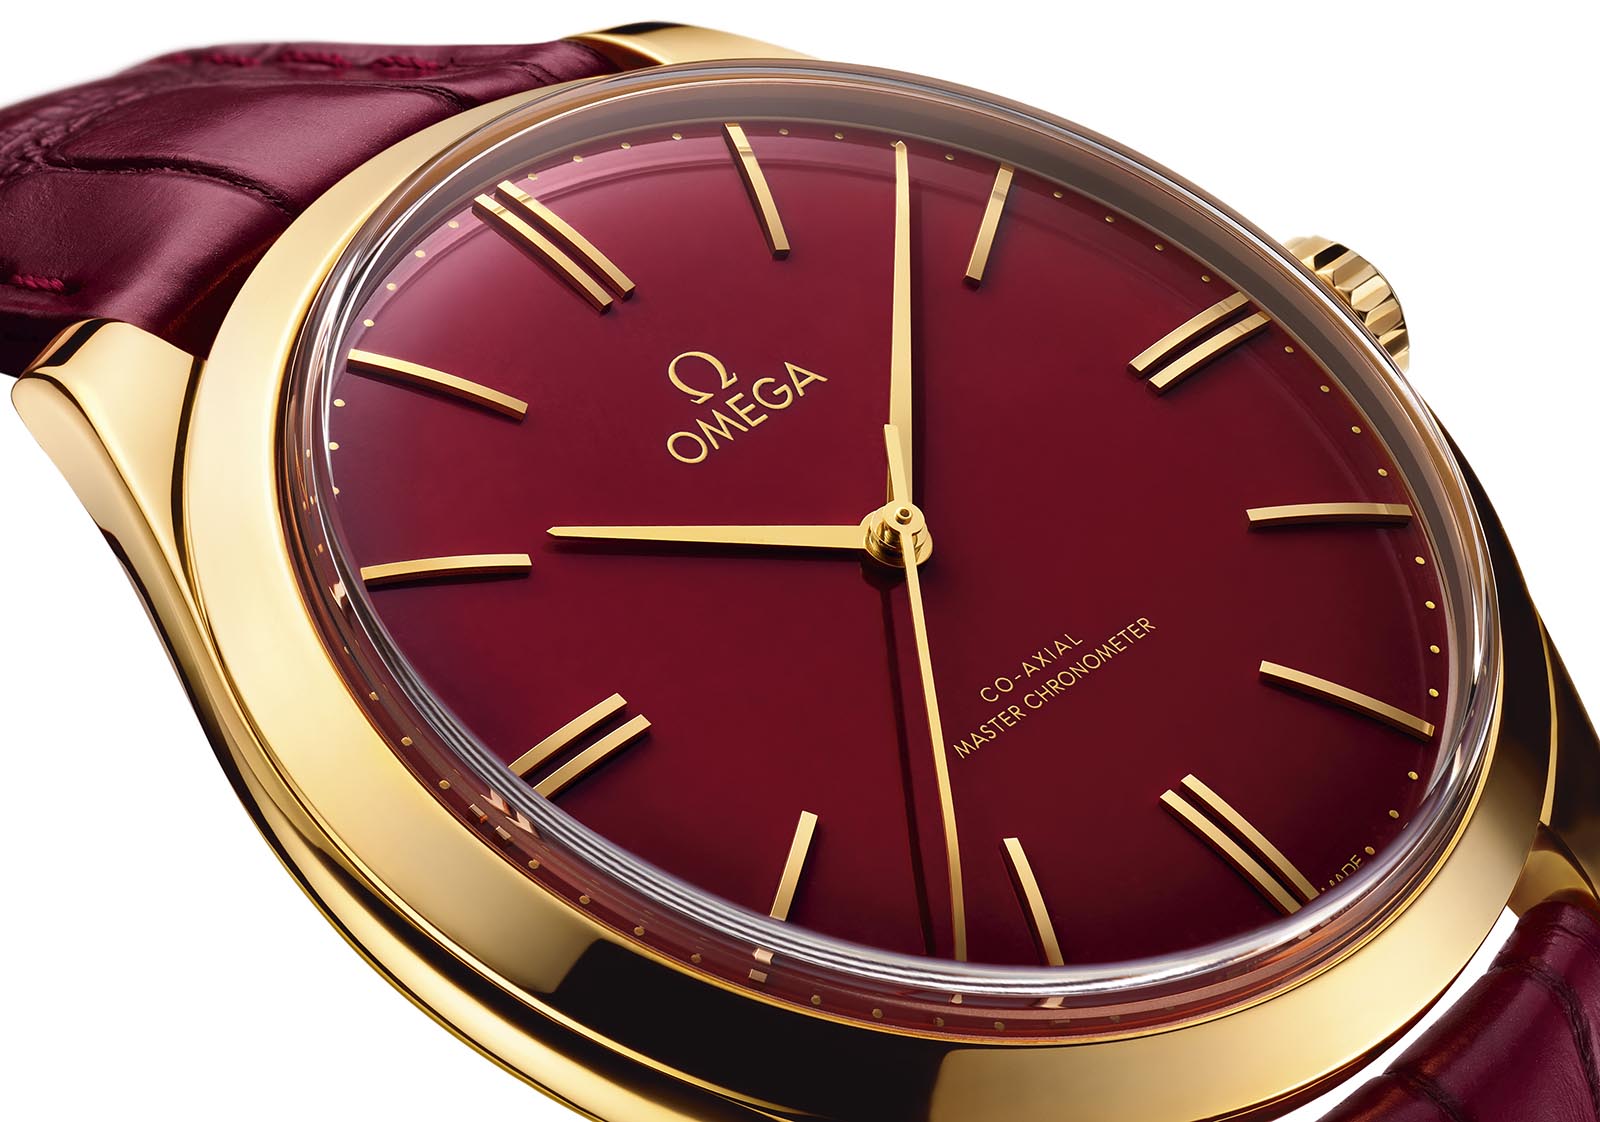 Omega Introduces the De Ville Trésor 125th Anniversary | SJX Watches